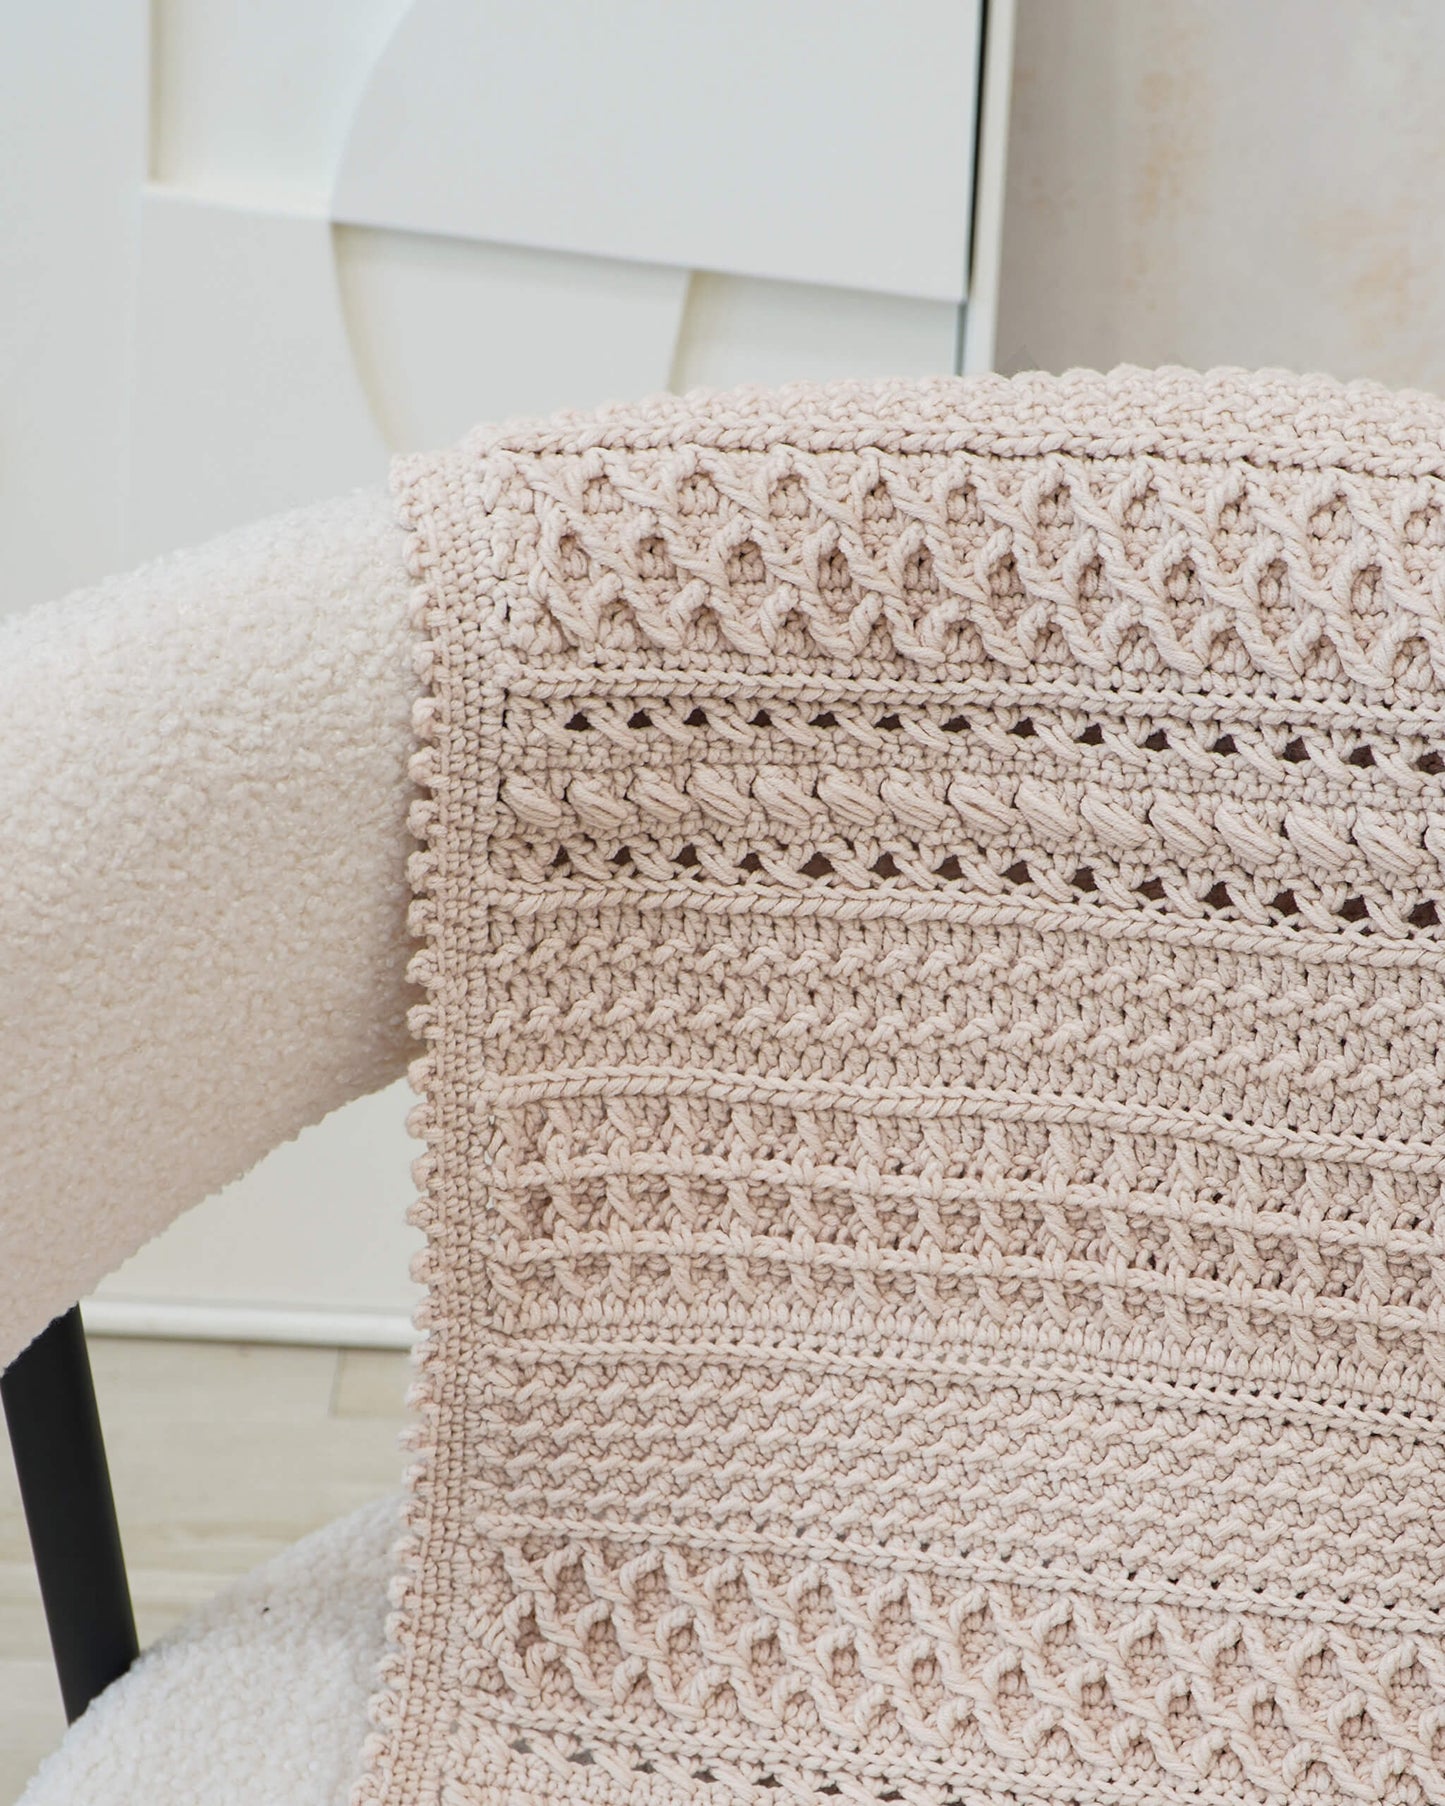 Easy crochet modern pattern 